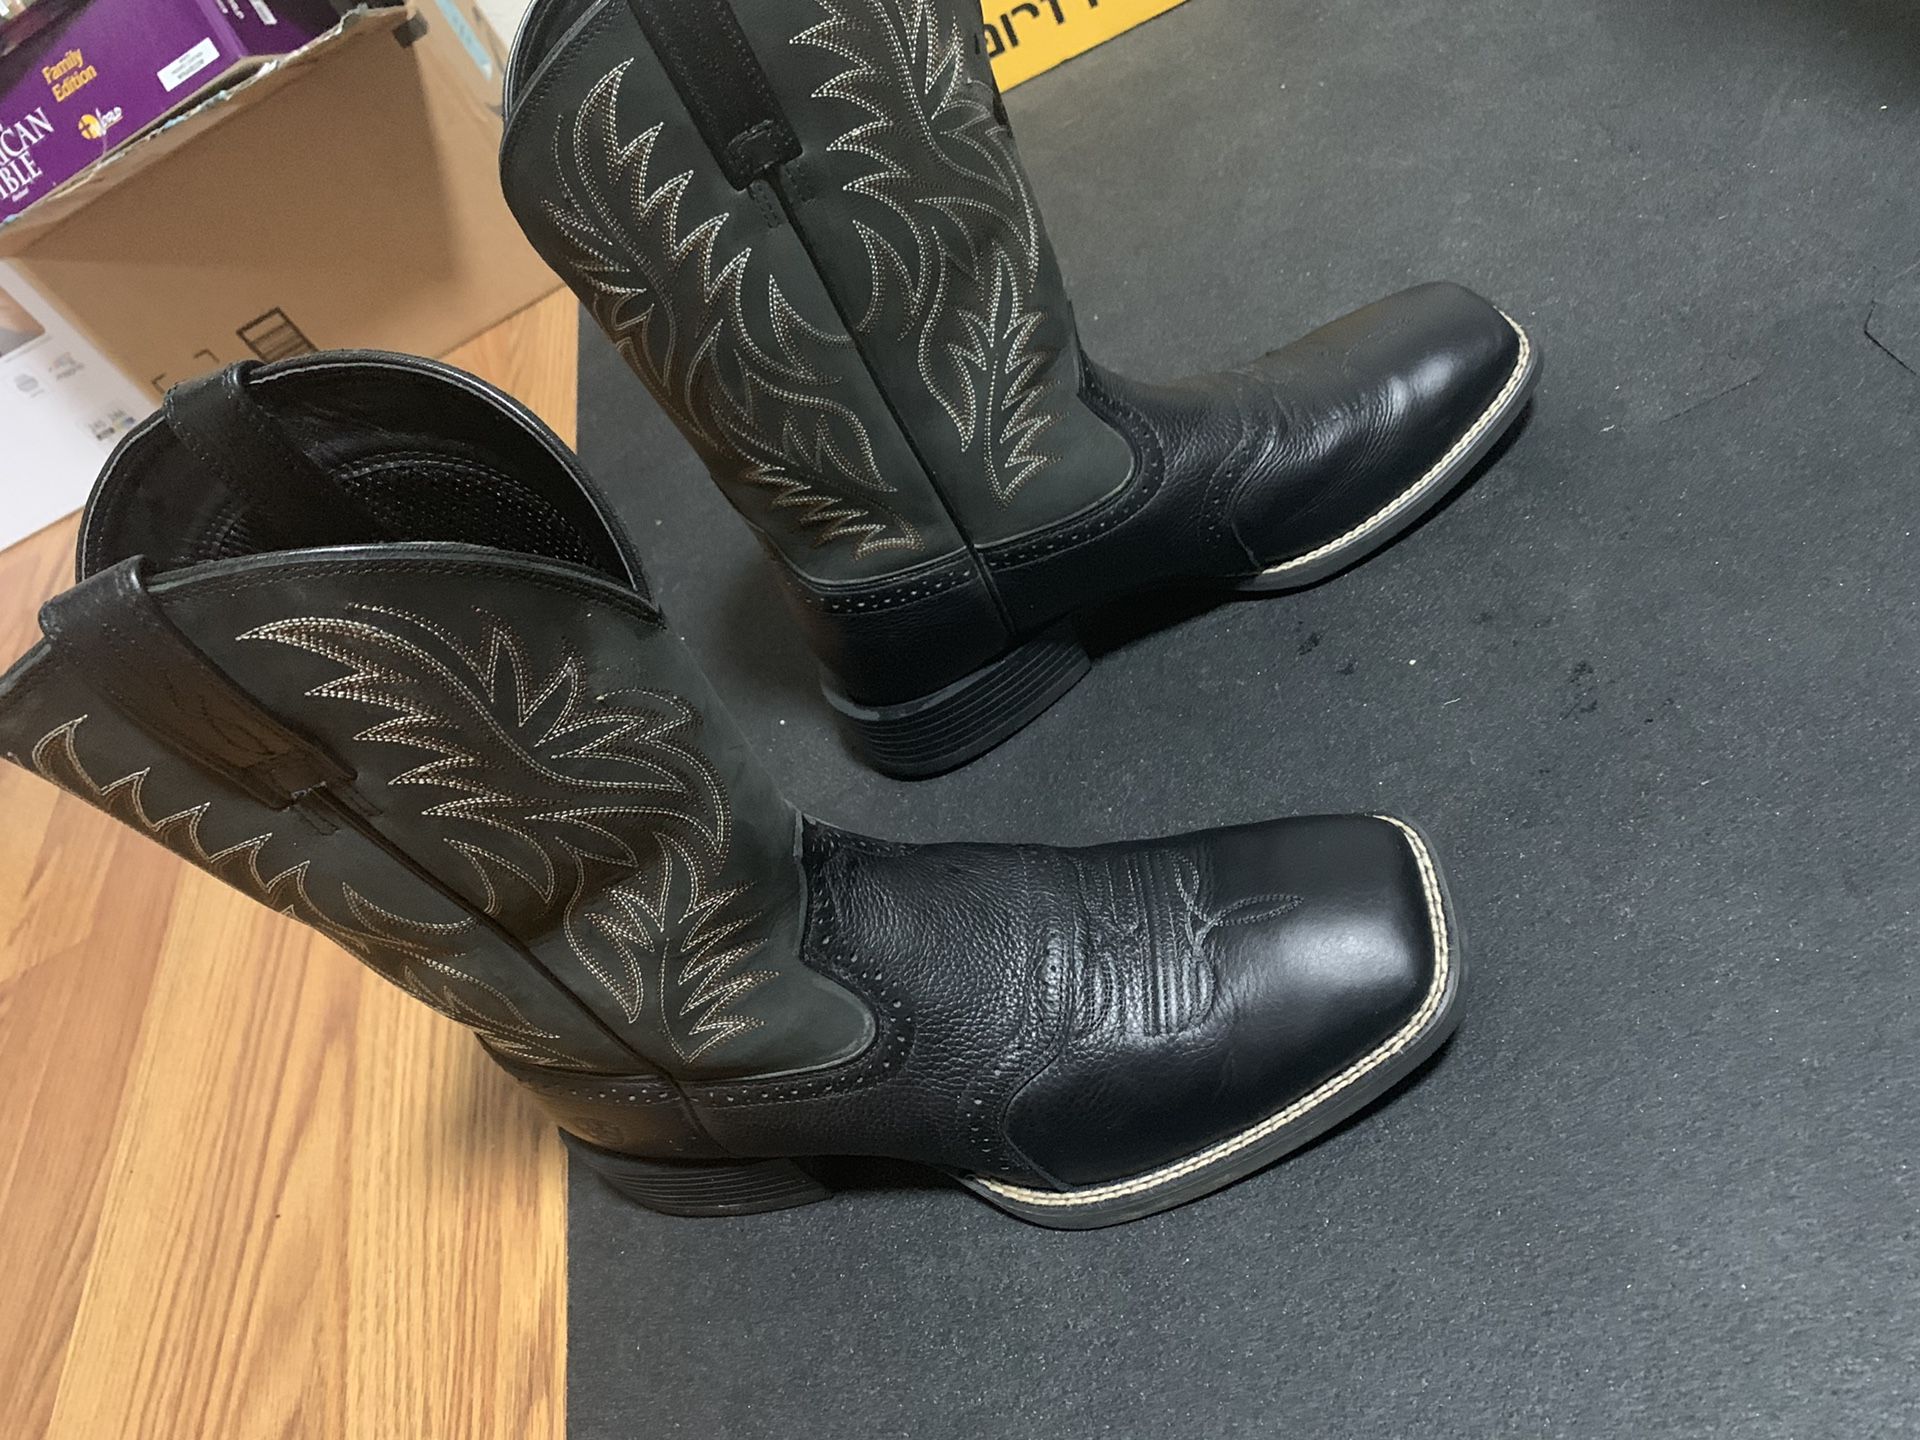 Ariat cowboy boots